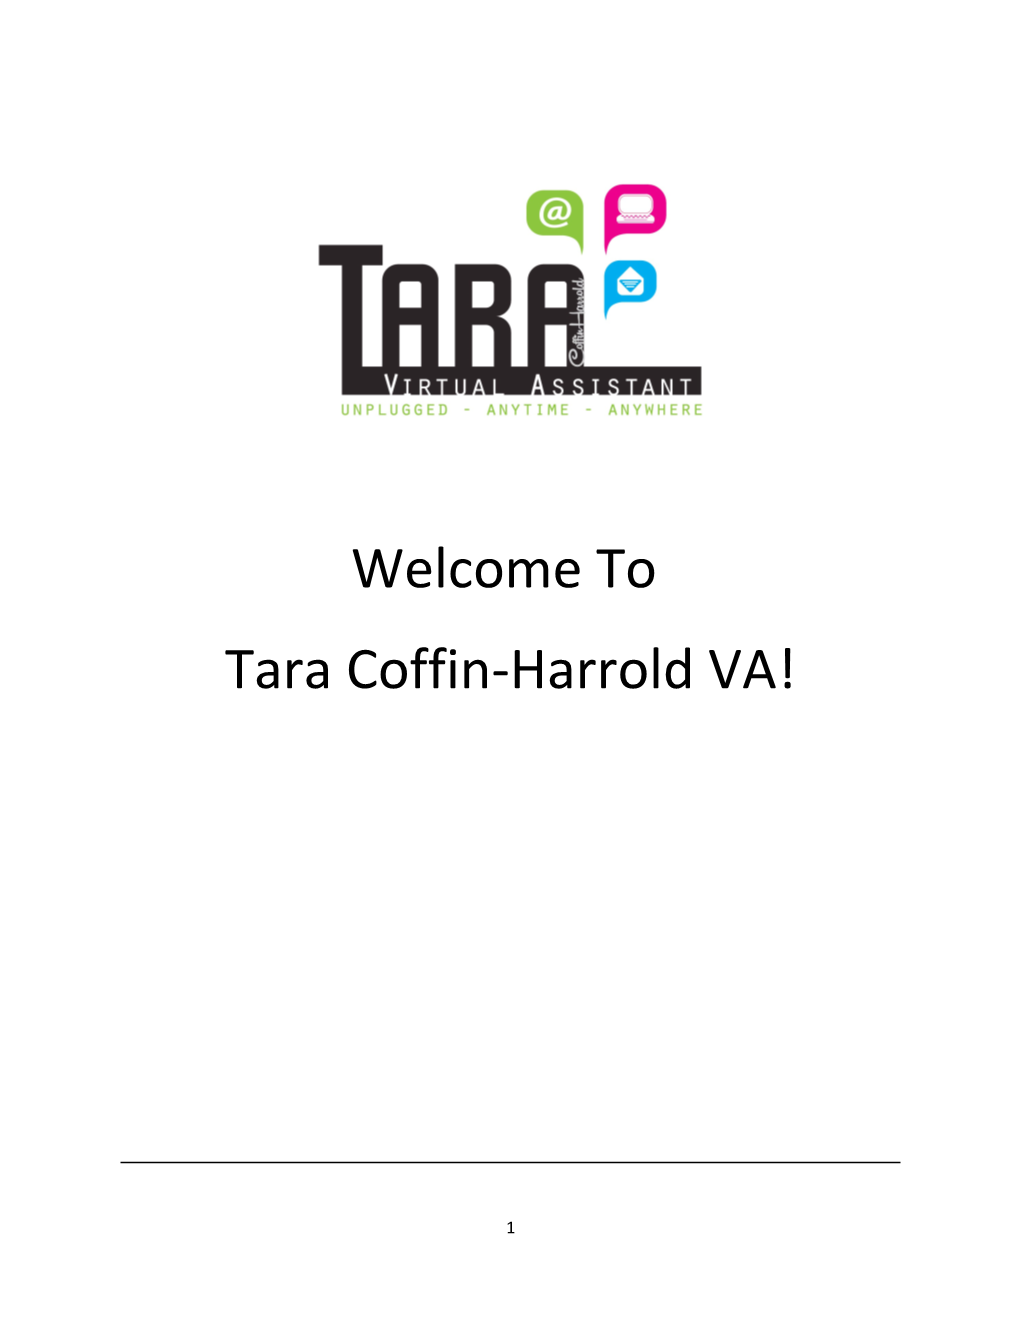 Tara Coffin-Harrold VA!